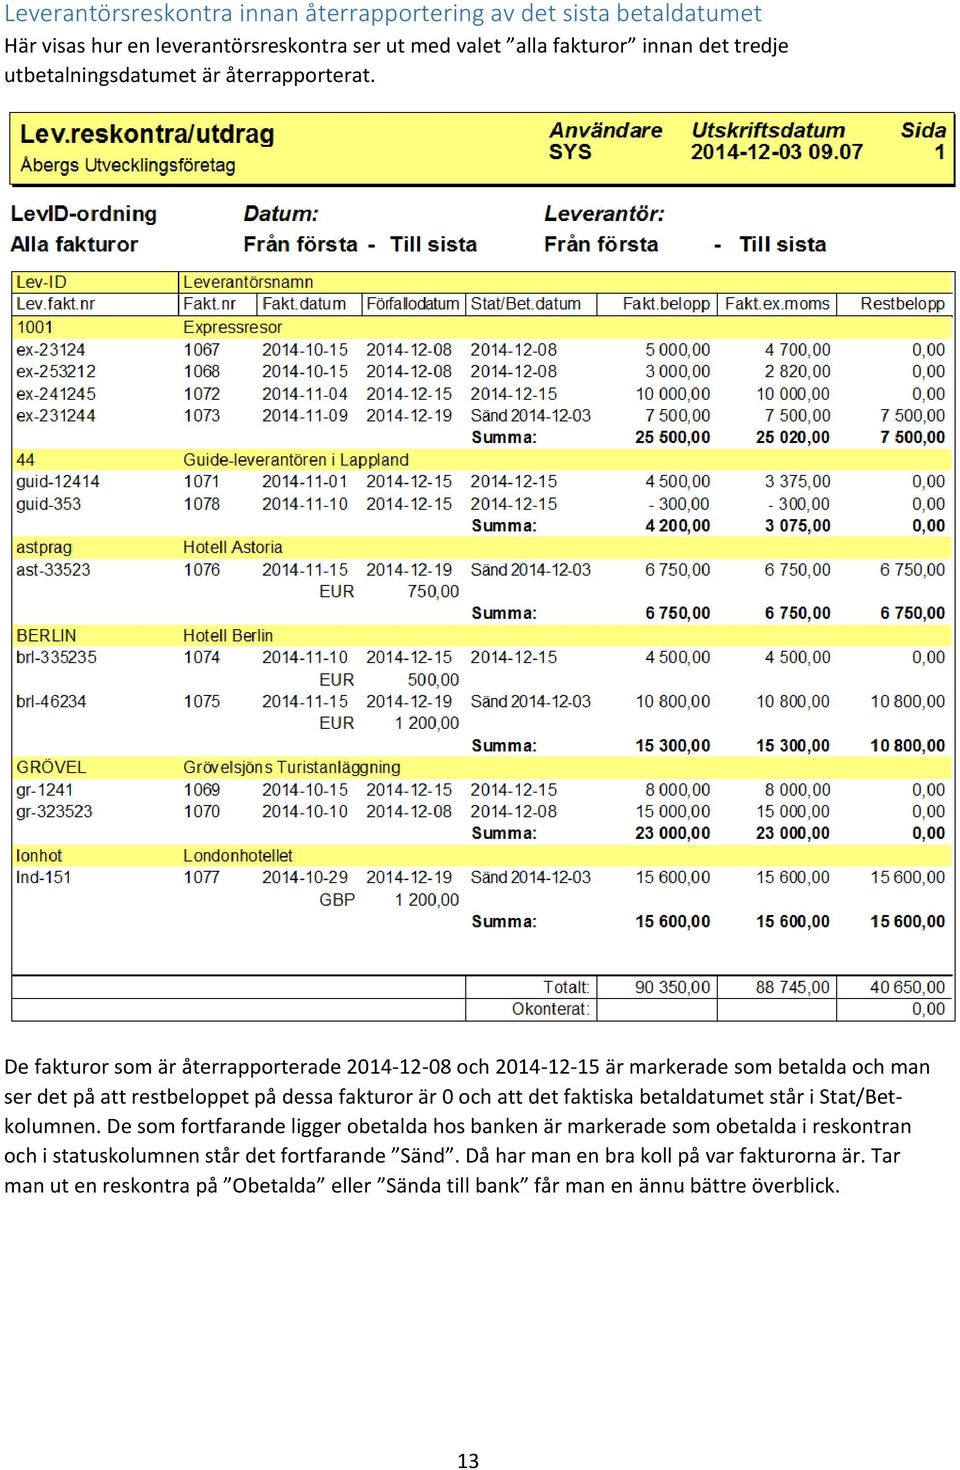 De fakturor som är återrapporterade 2014-12-08 och 2014-12-15 är markerade som betalda och man ser det på att restbeloppet på dessa fakturor är 0 och att det faktiska